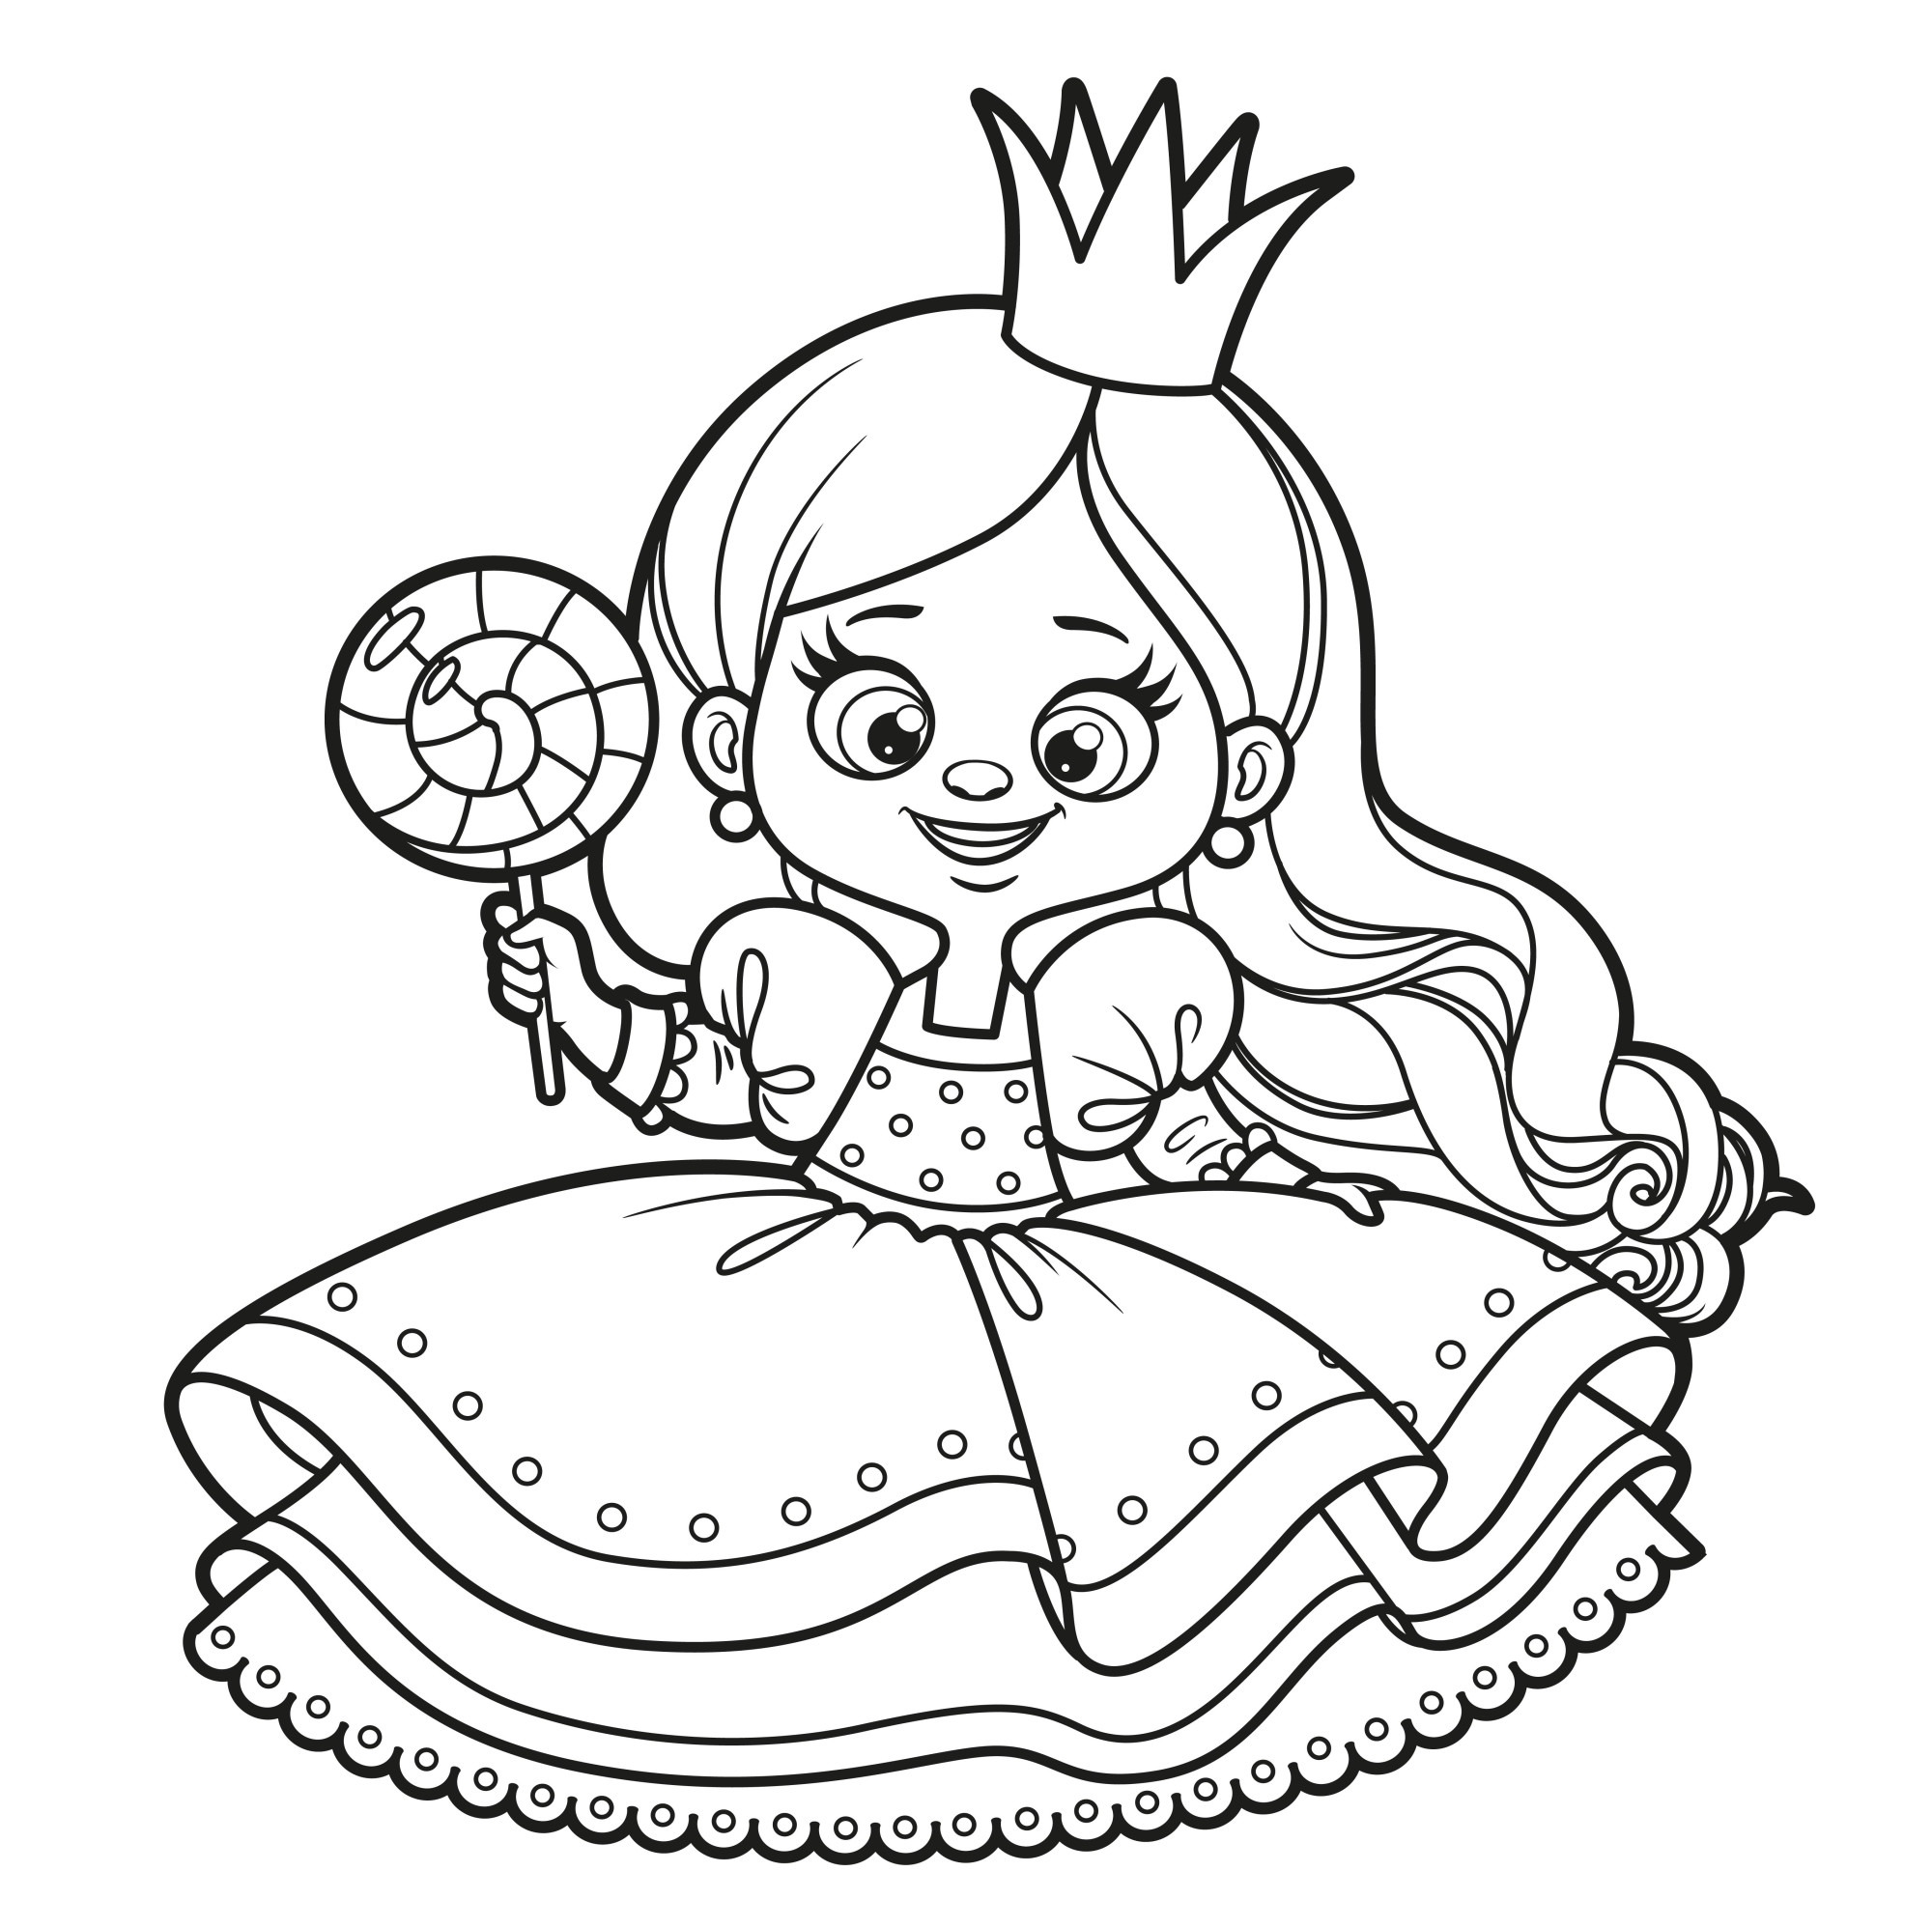 Раскраска для детей: принцесса с большой конфетой в руке